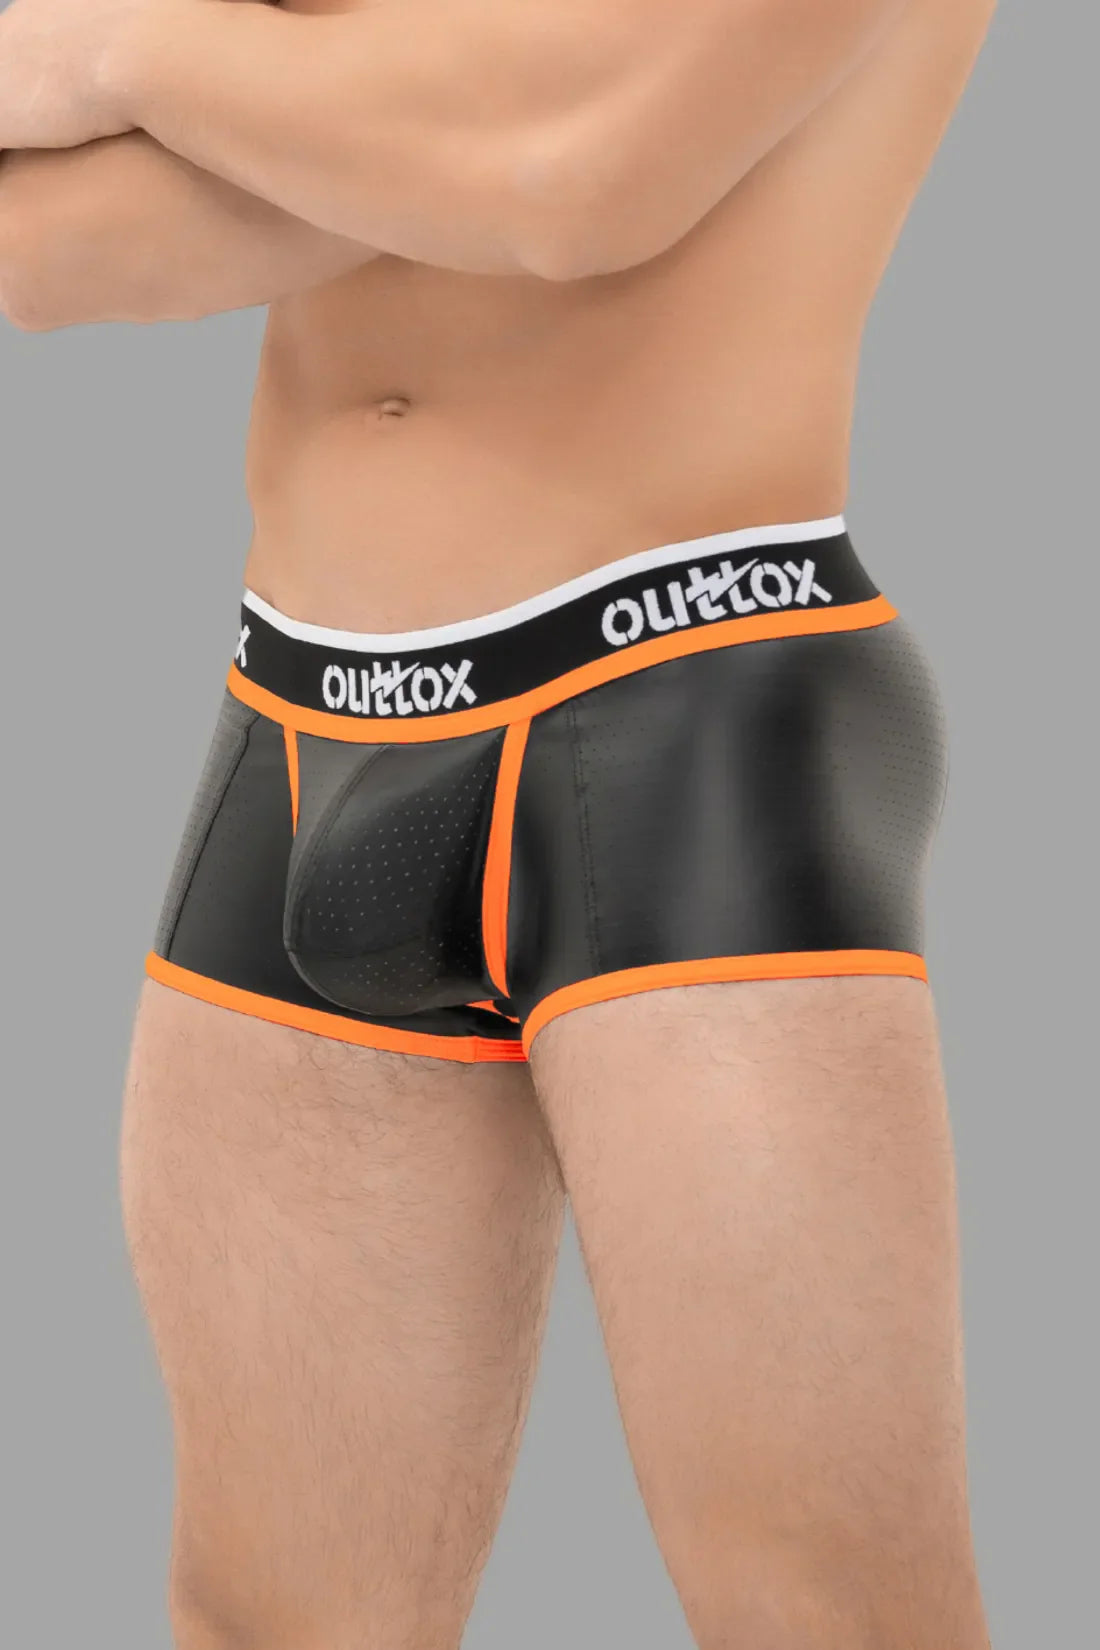 Outtox. Shorts mit offenem Rücken und Druckknopf-Codpiece. Schwarz und Orange